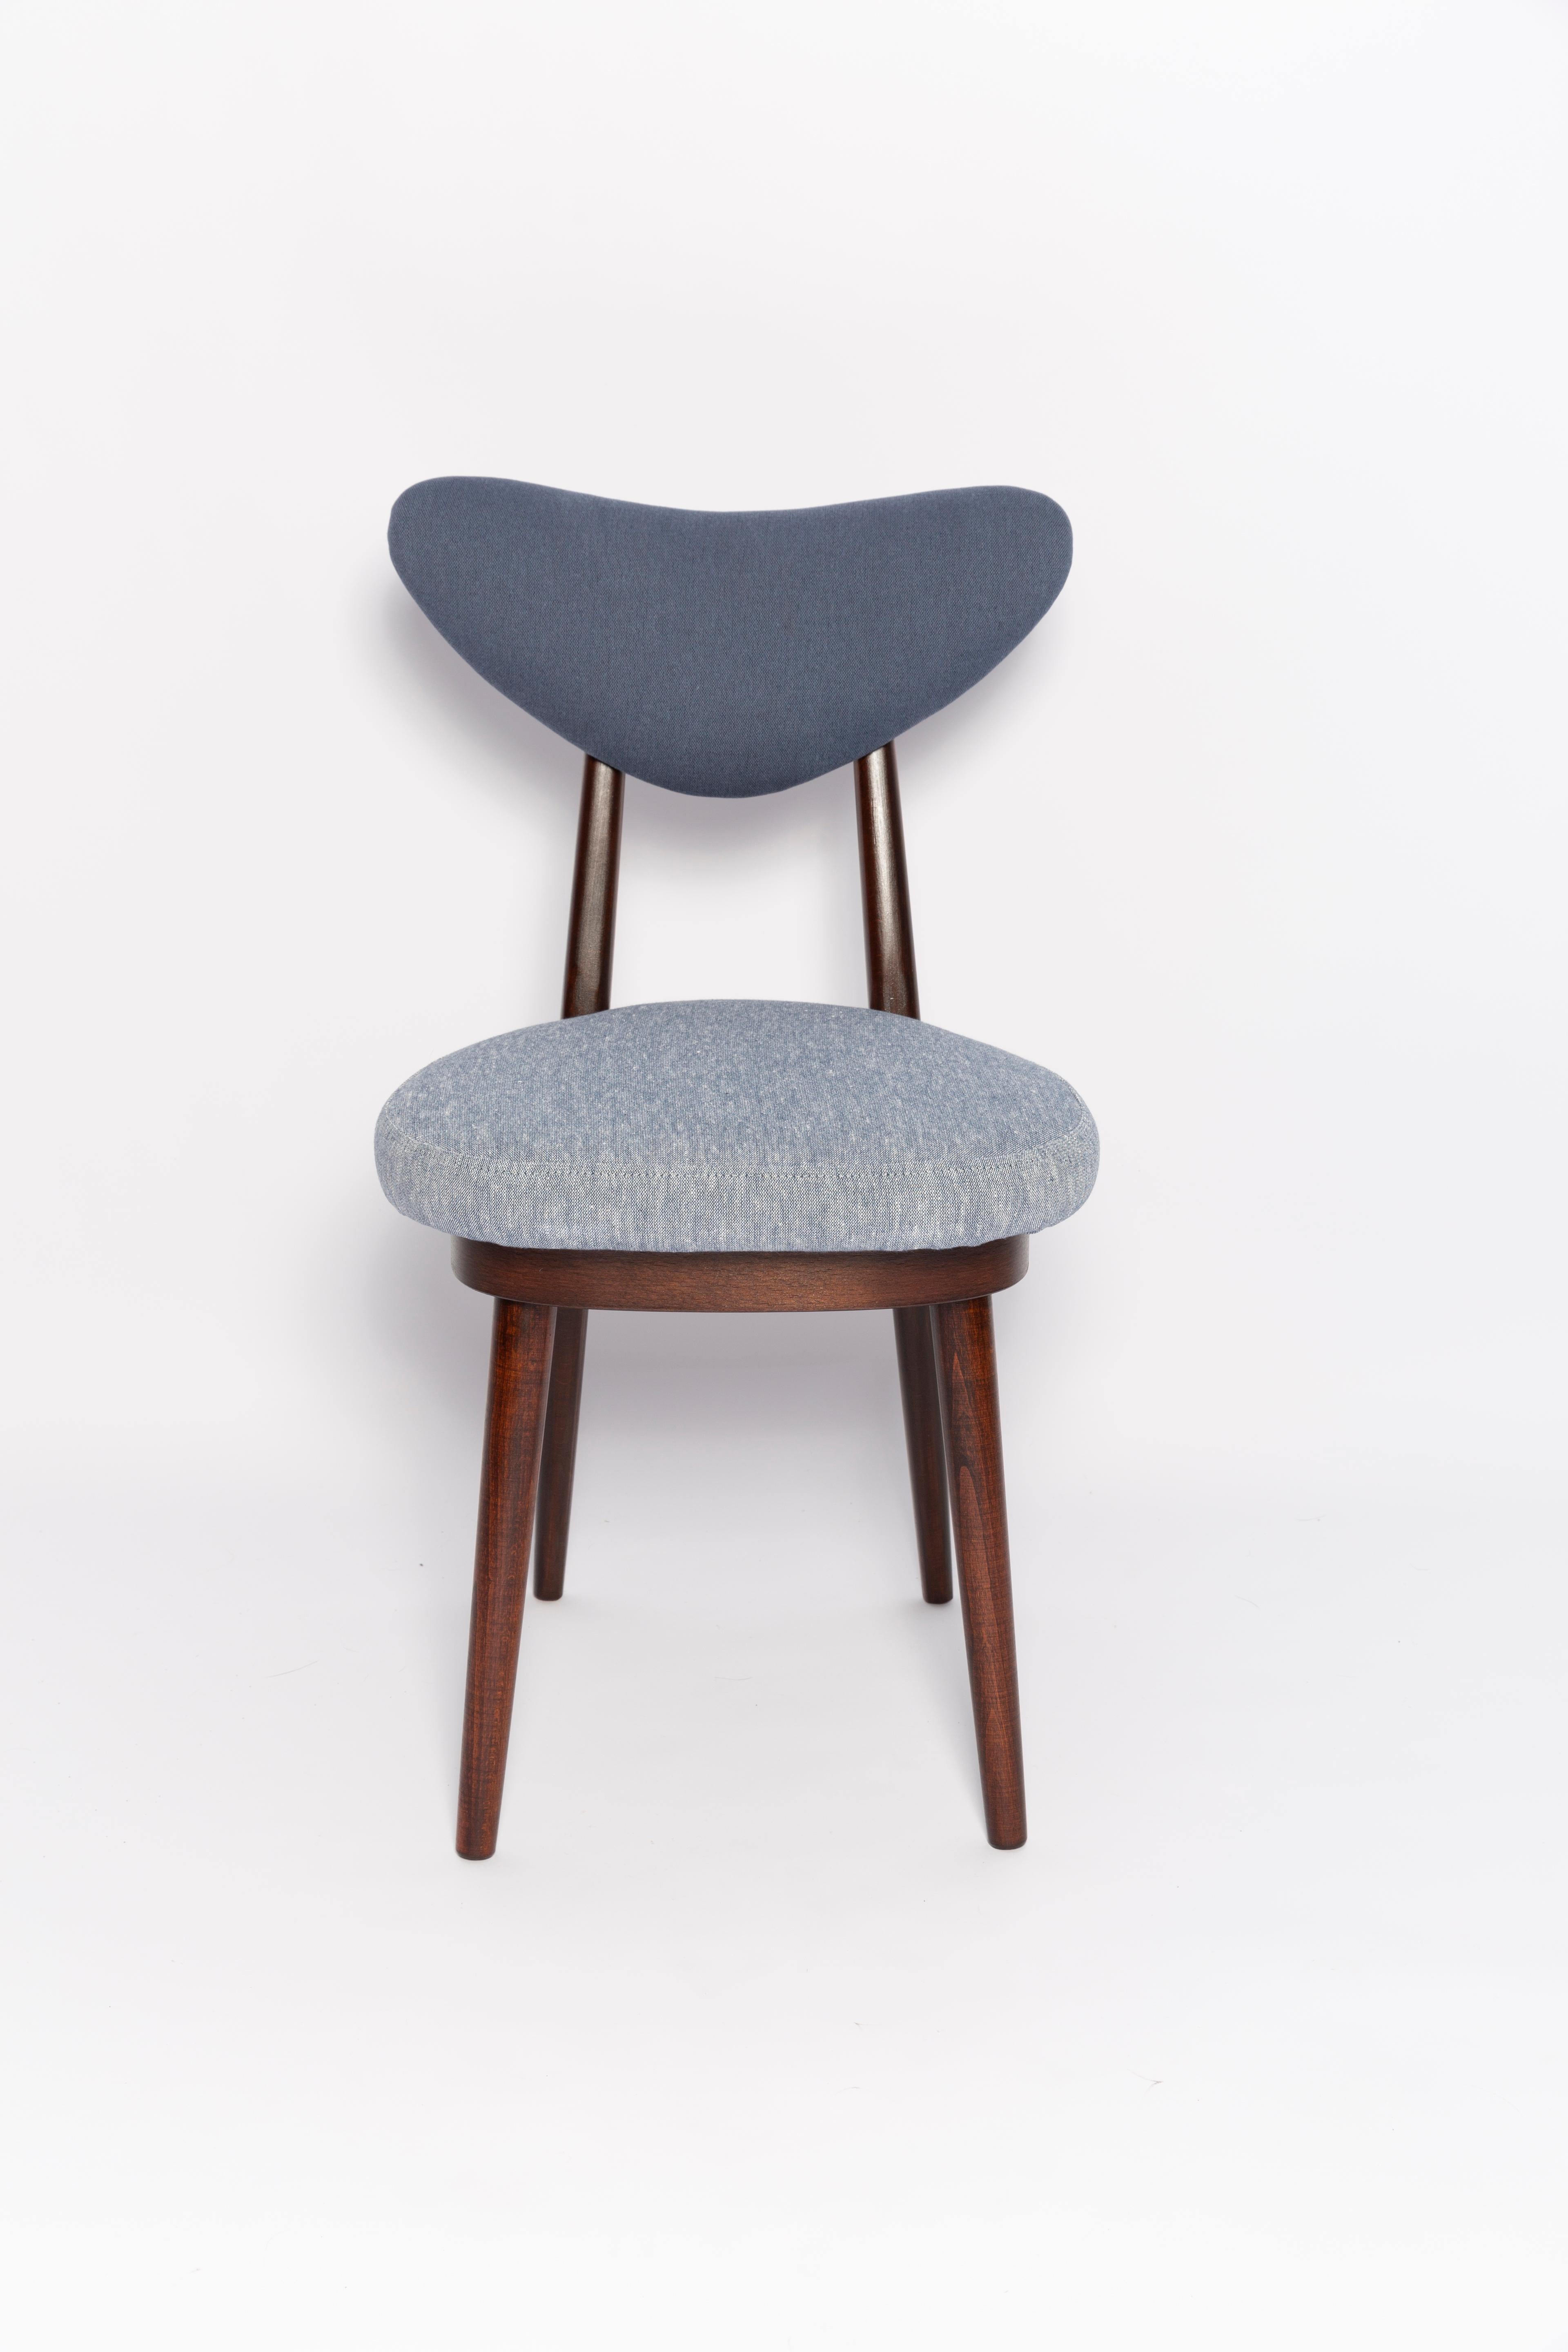 Velvet Midcentury Light and Medium Blue Denim Heart Chair, Europe, 1960s For Sale